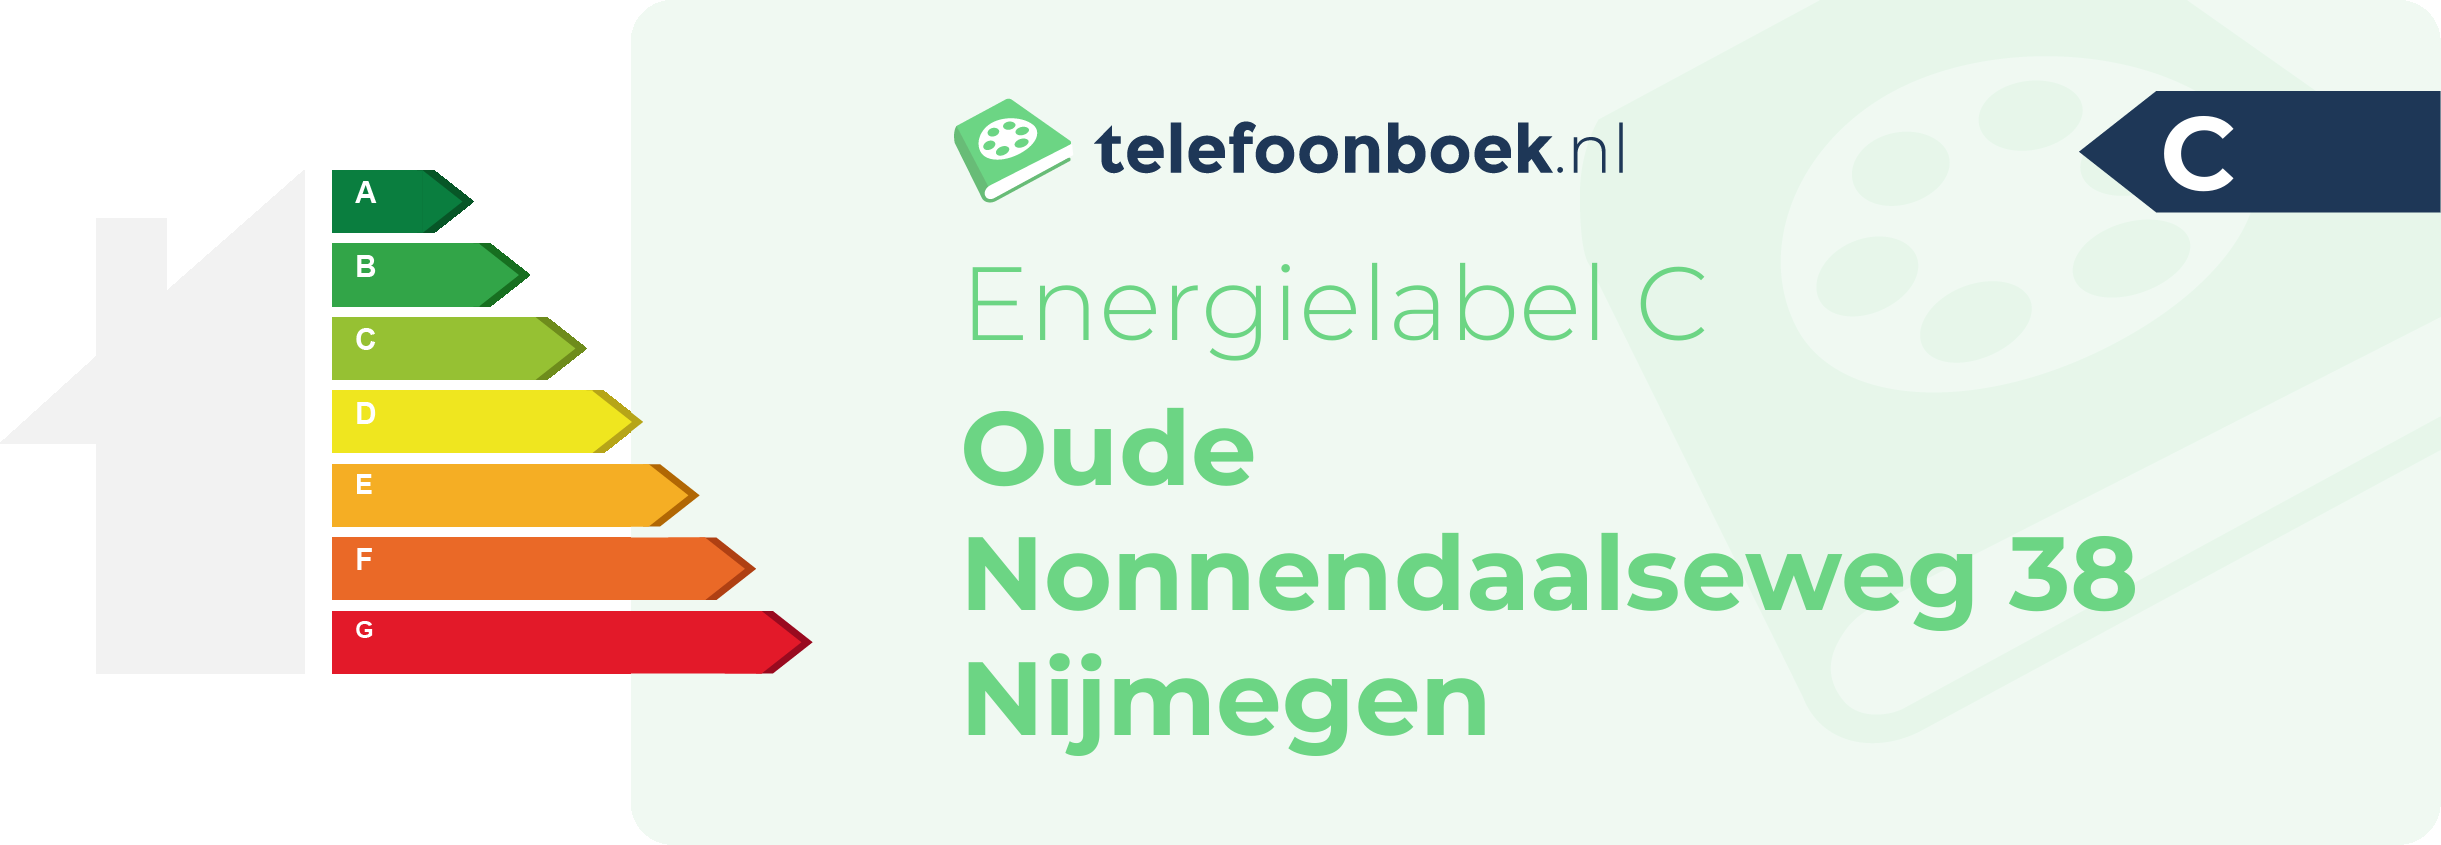 Energielabel Oude Nonnendaalseweg 38 Nijmegen